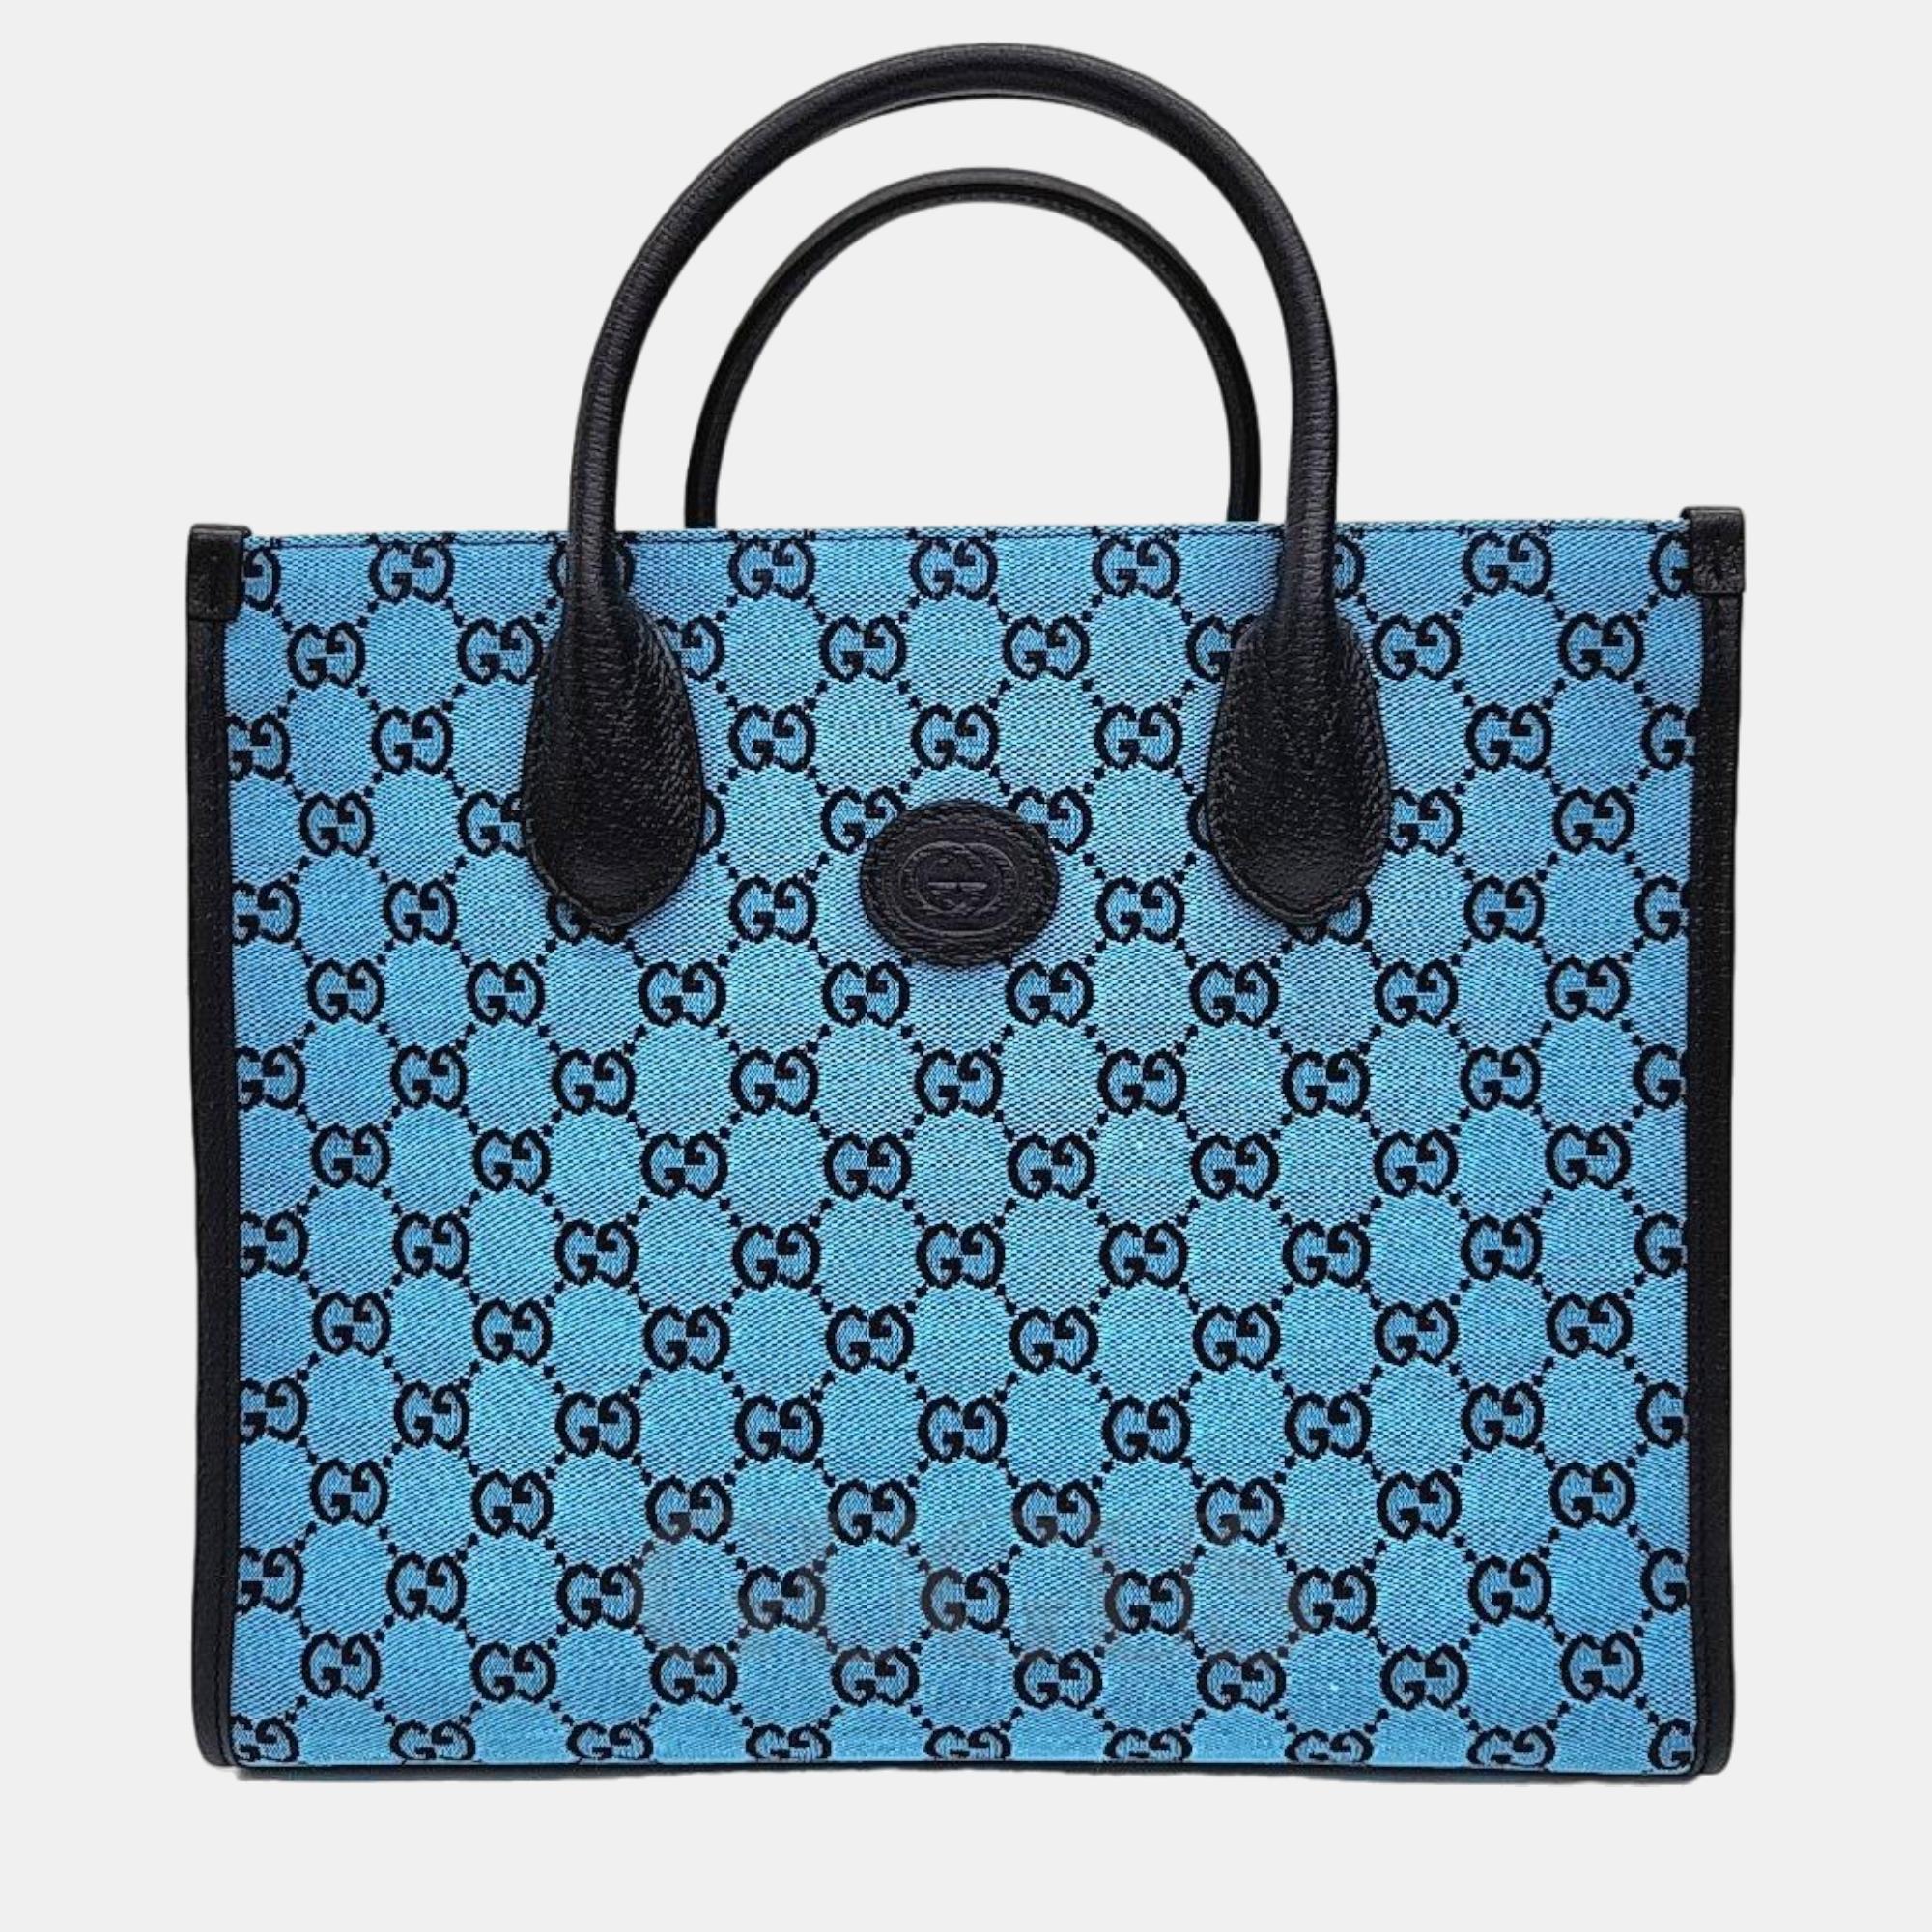 Gucci gg multicolor small tote bag (659983)